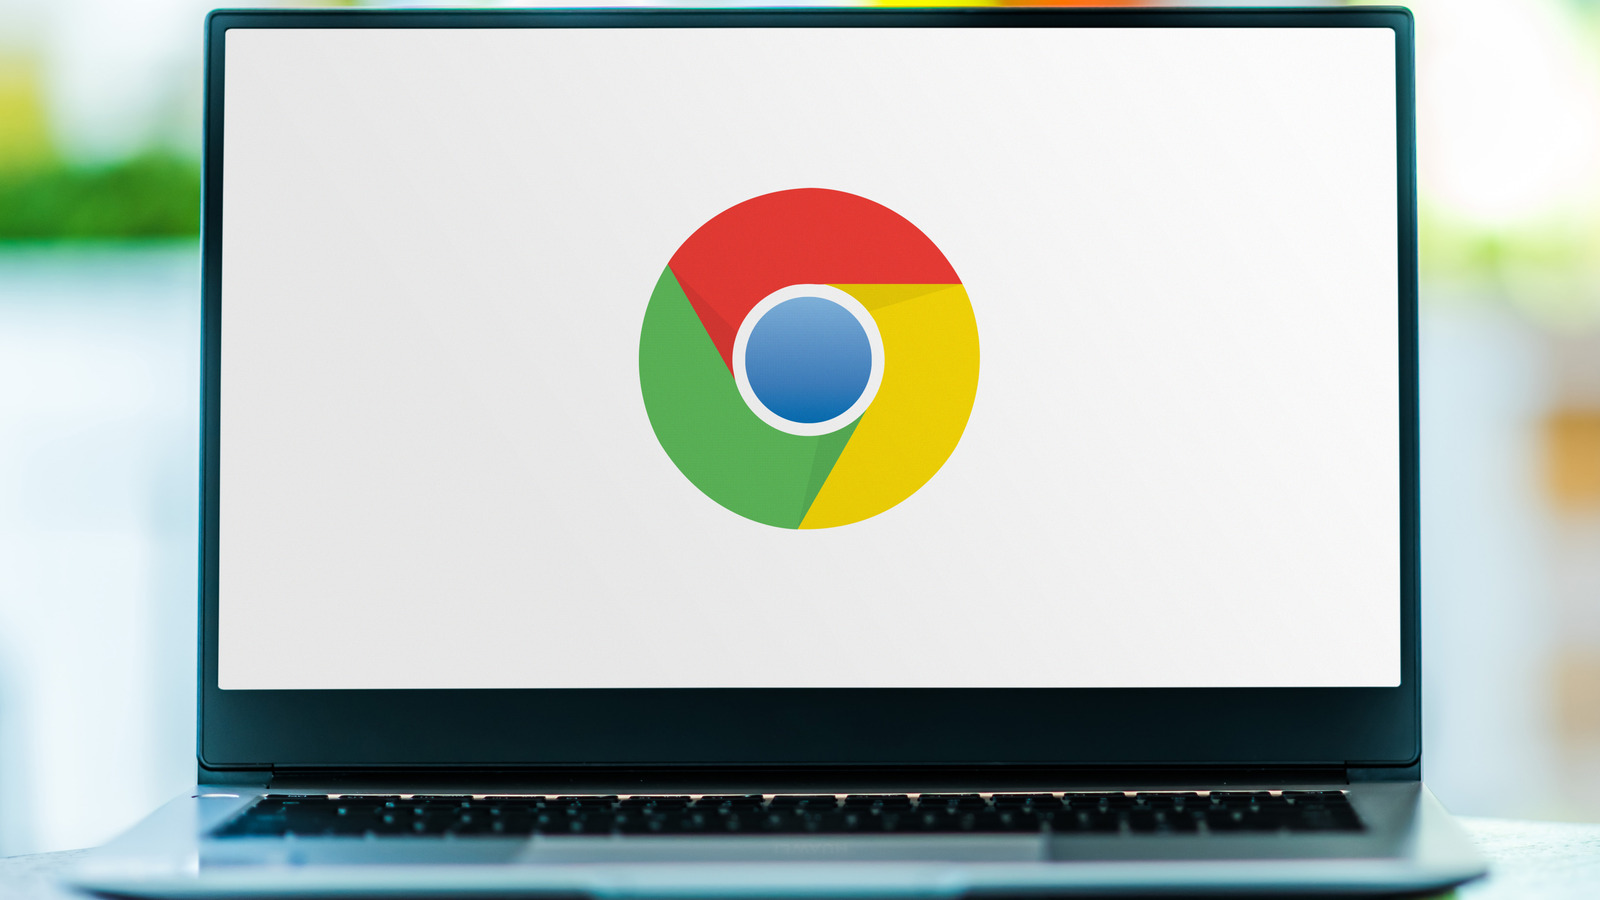 O novo guia de privacidade do Google visa simplificar as configurações do Chrome